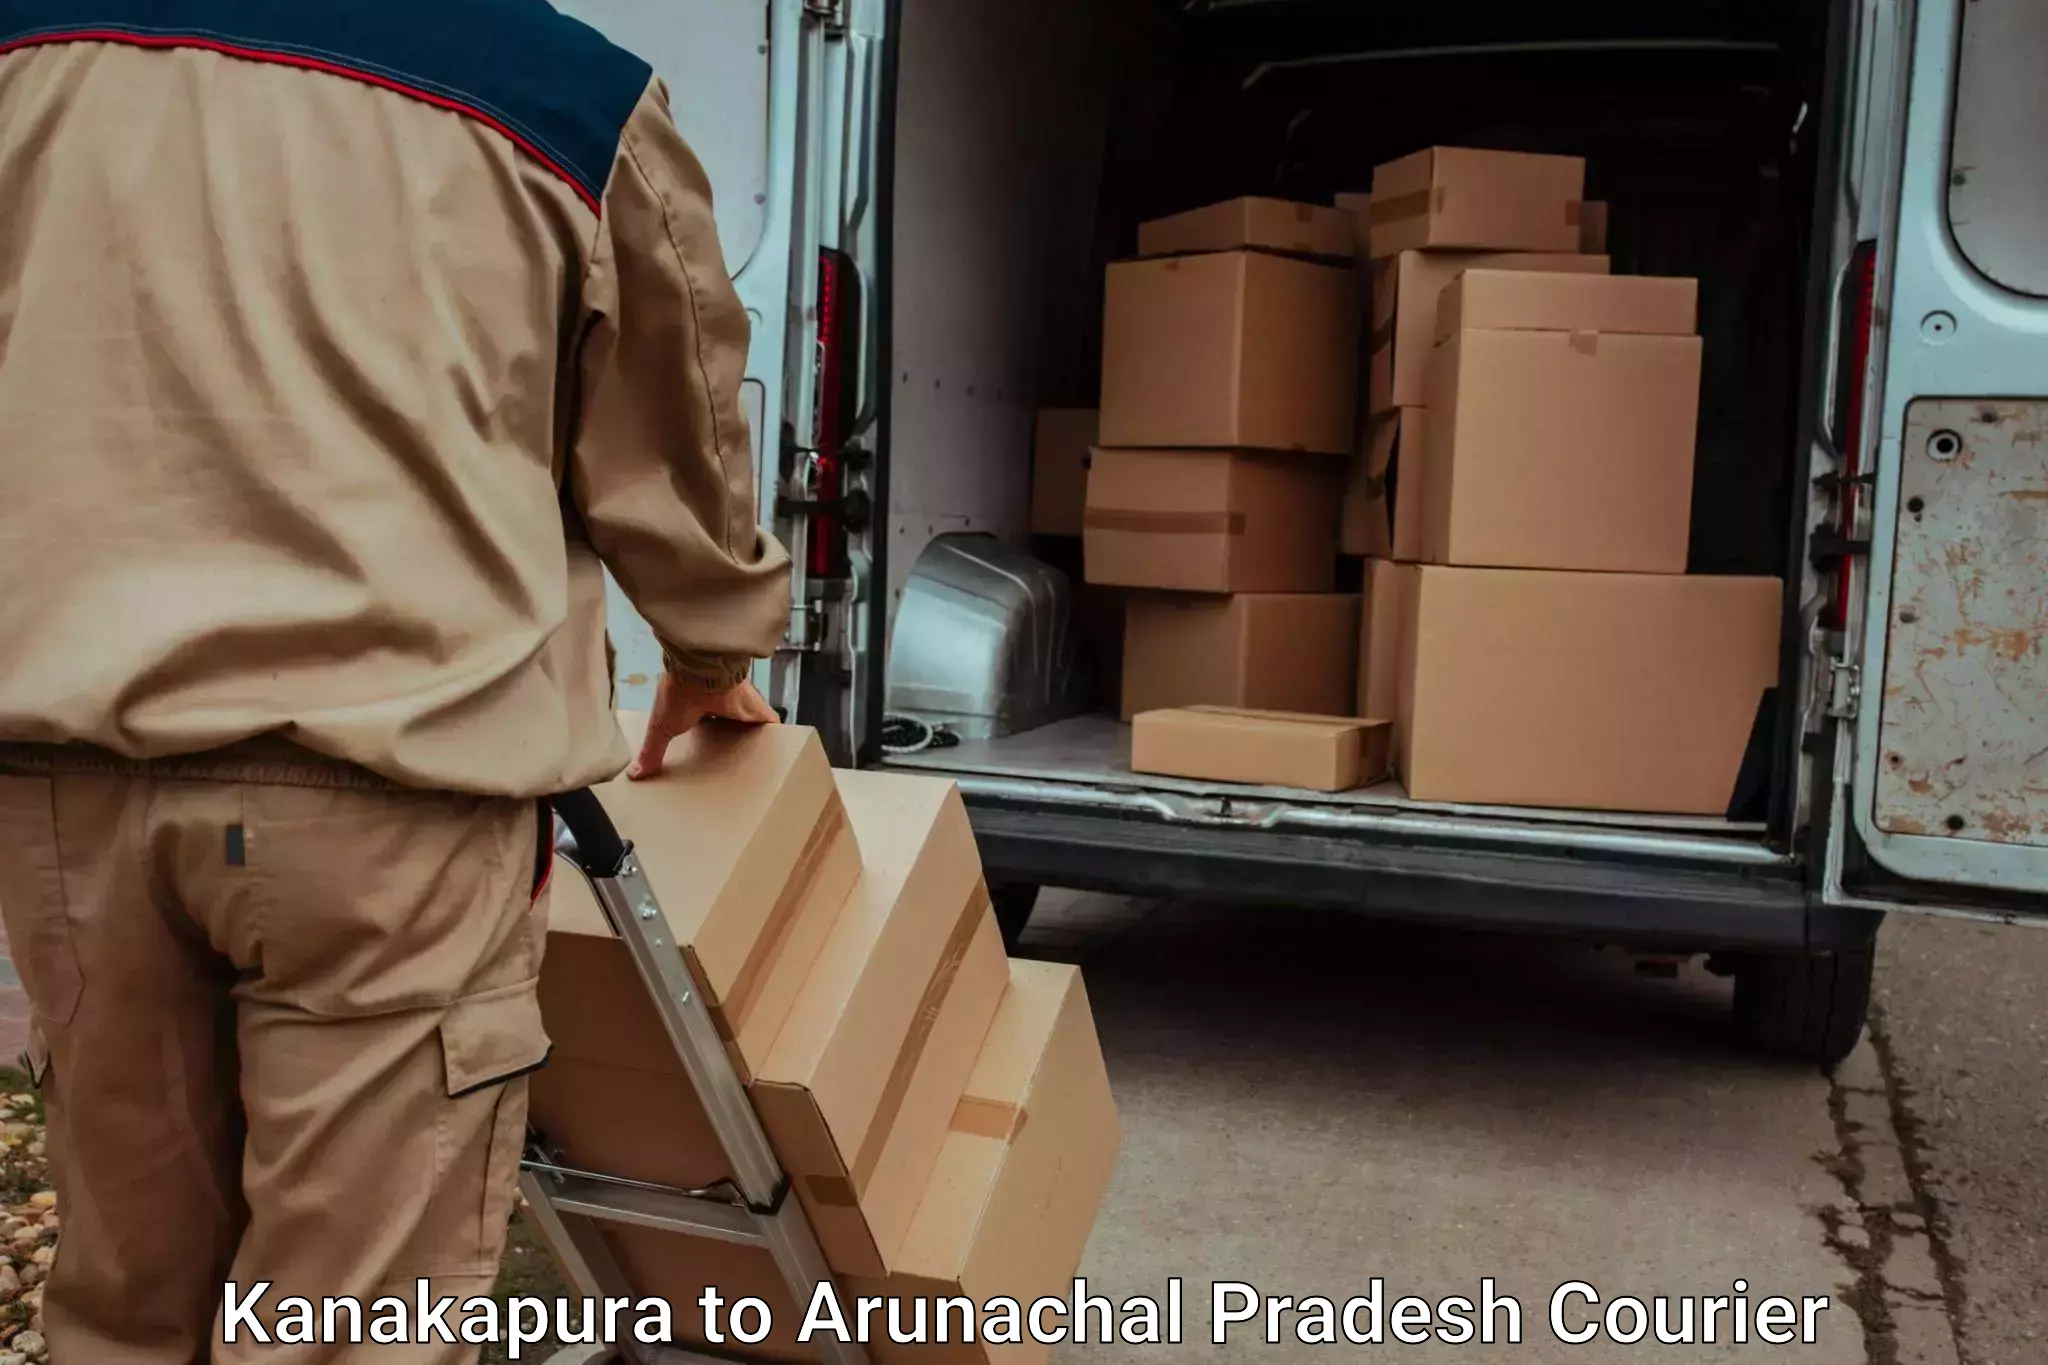 Professional moving company in Kanakapura to Deomali